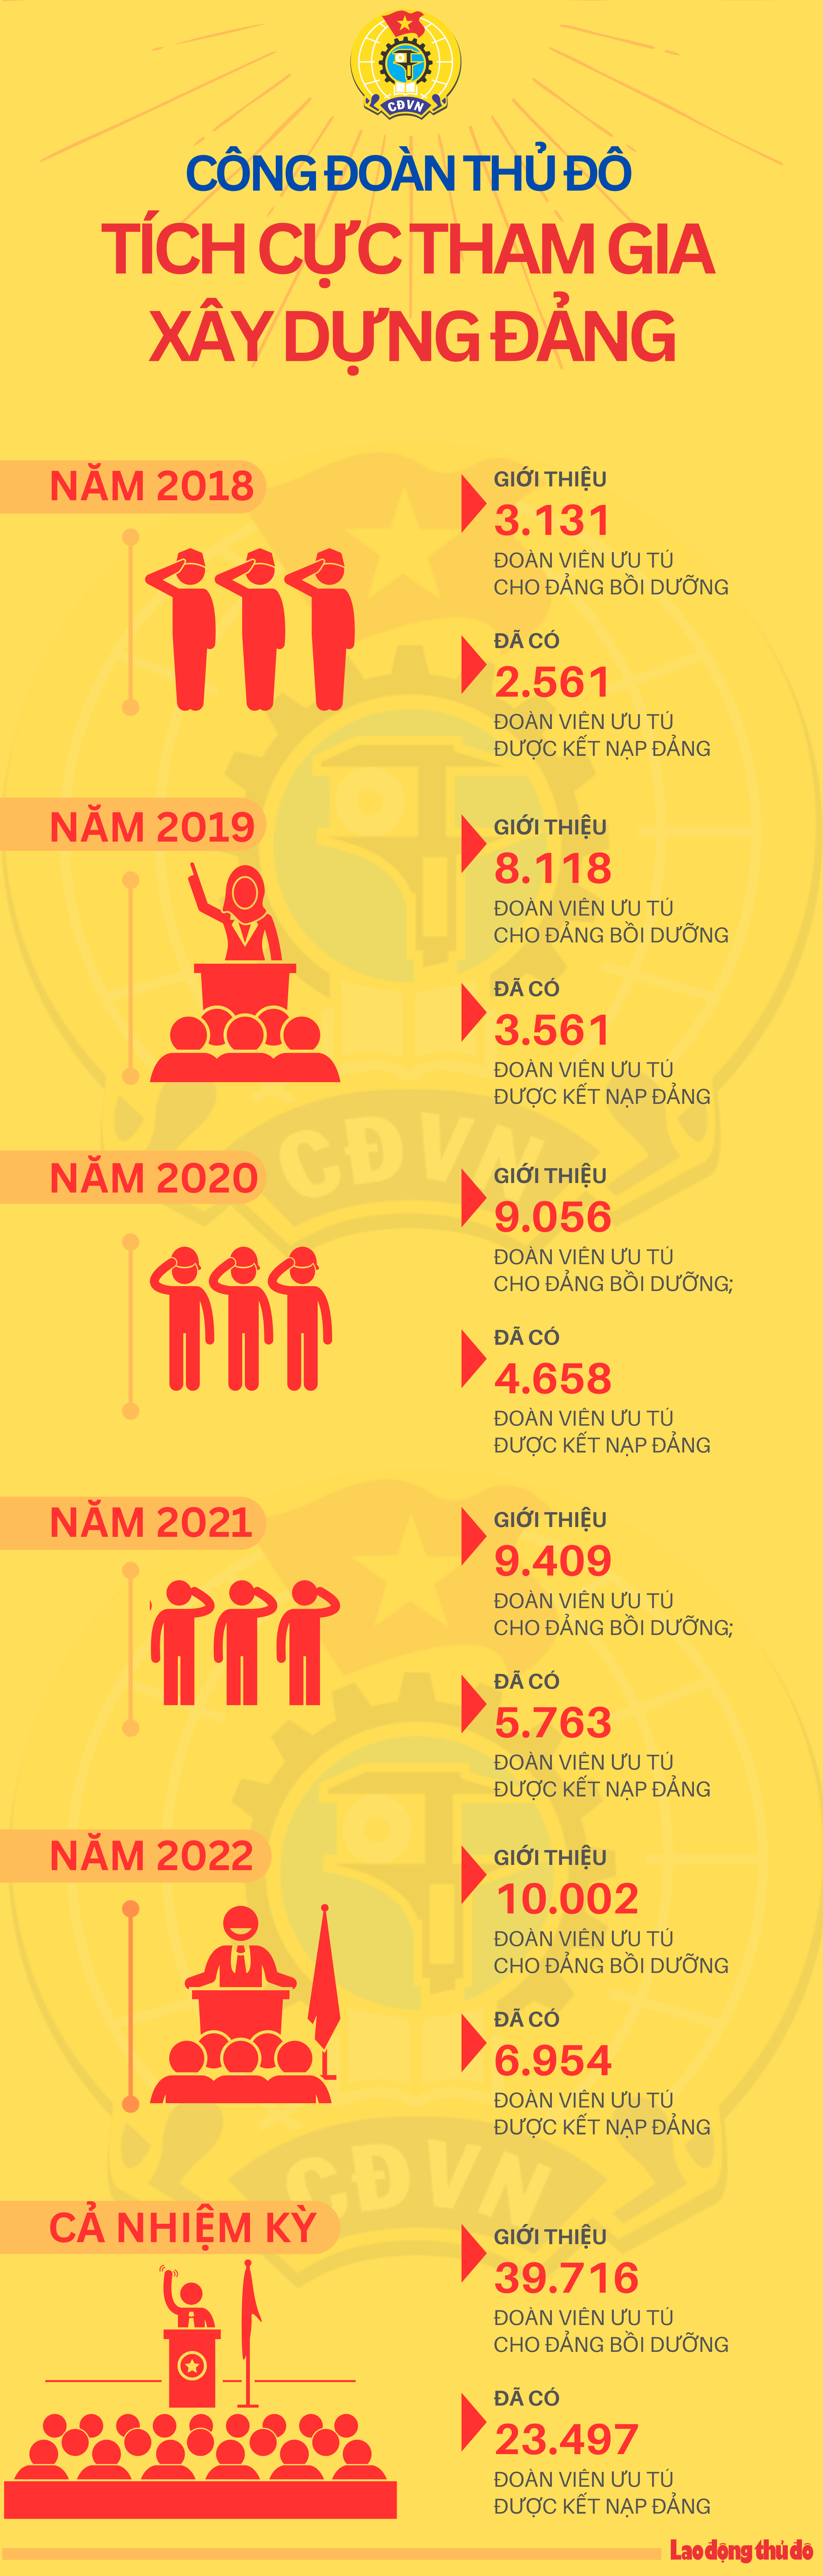 Infographic: Công đoàn Thủ đô tích cực tham gia xây dựng Đảng